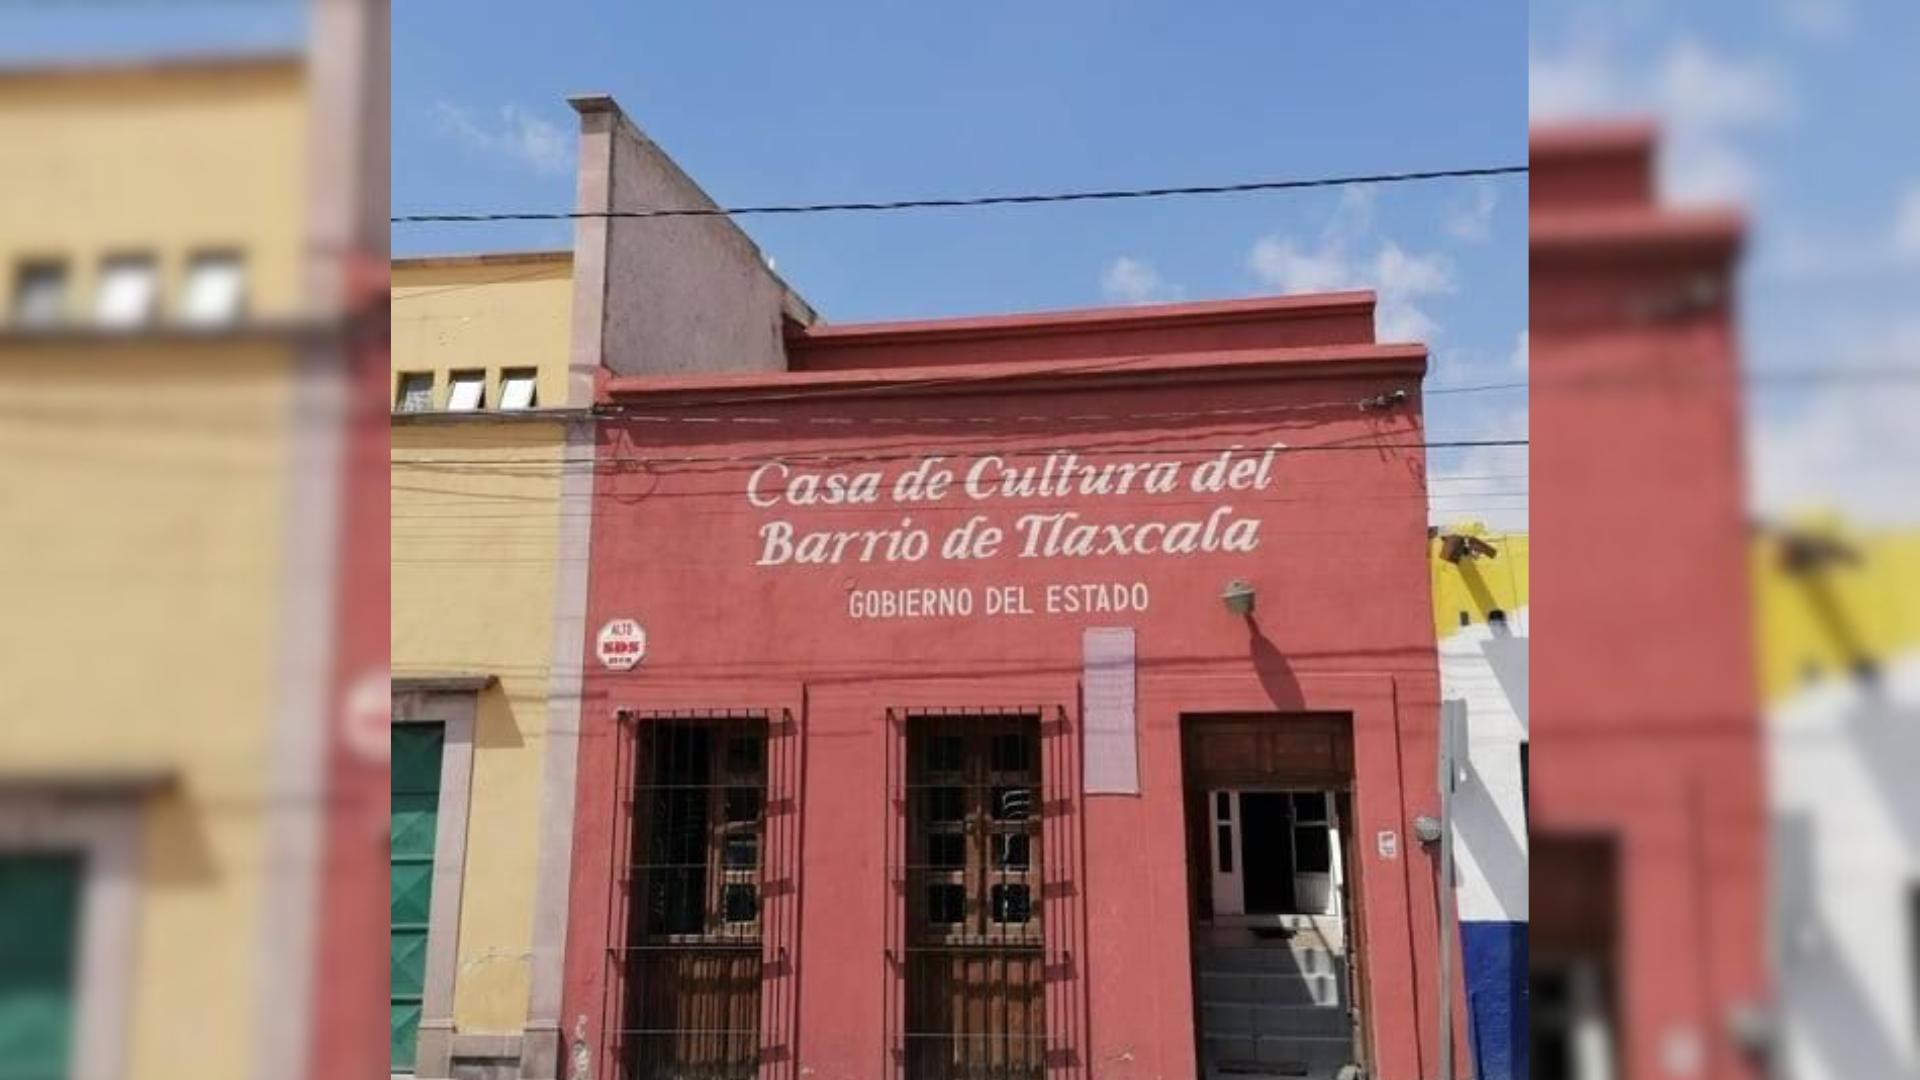 Talleres, cursos y más en la Casa de Cultura del Barrio de Tlaxcala